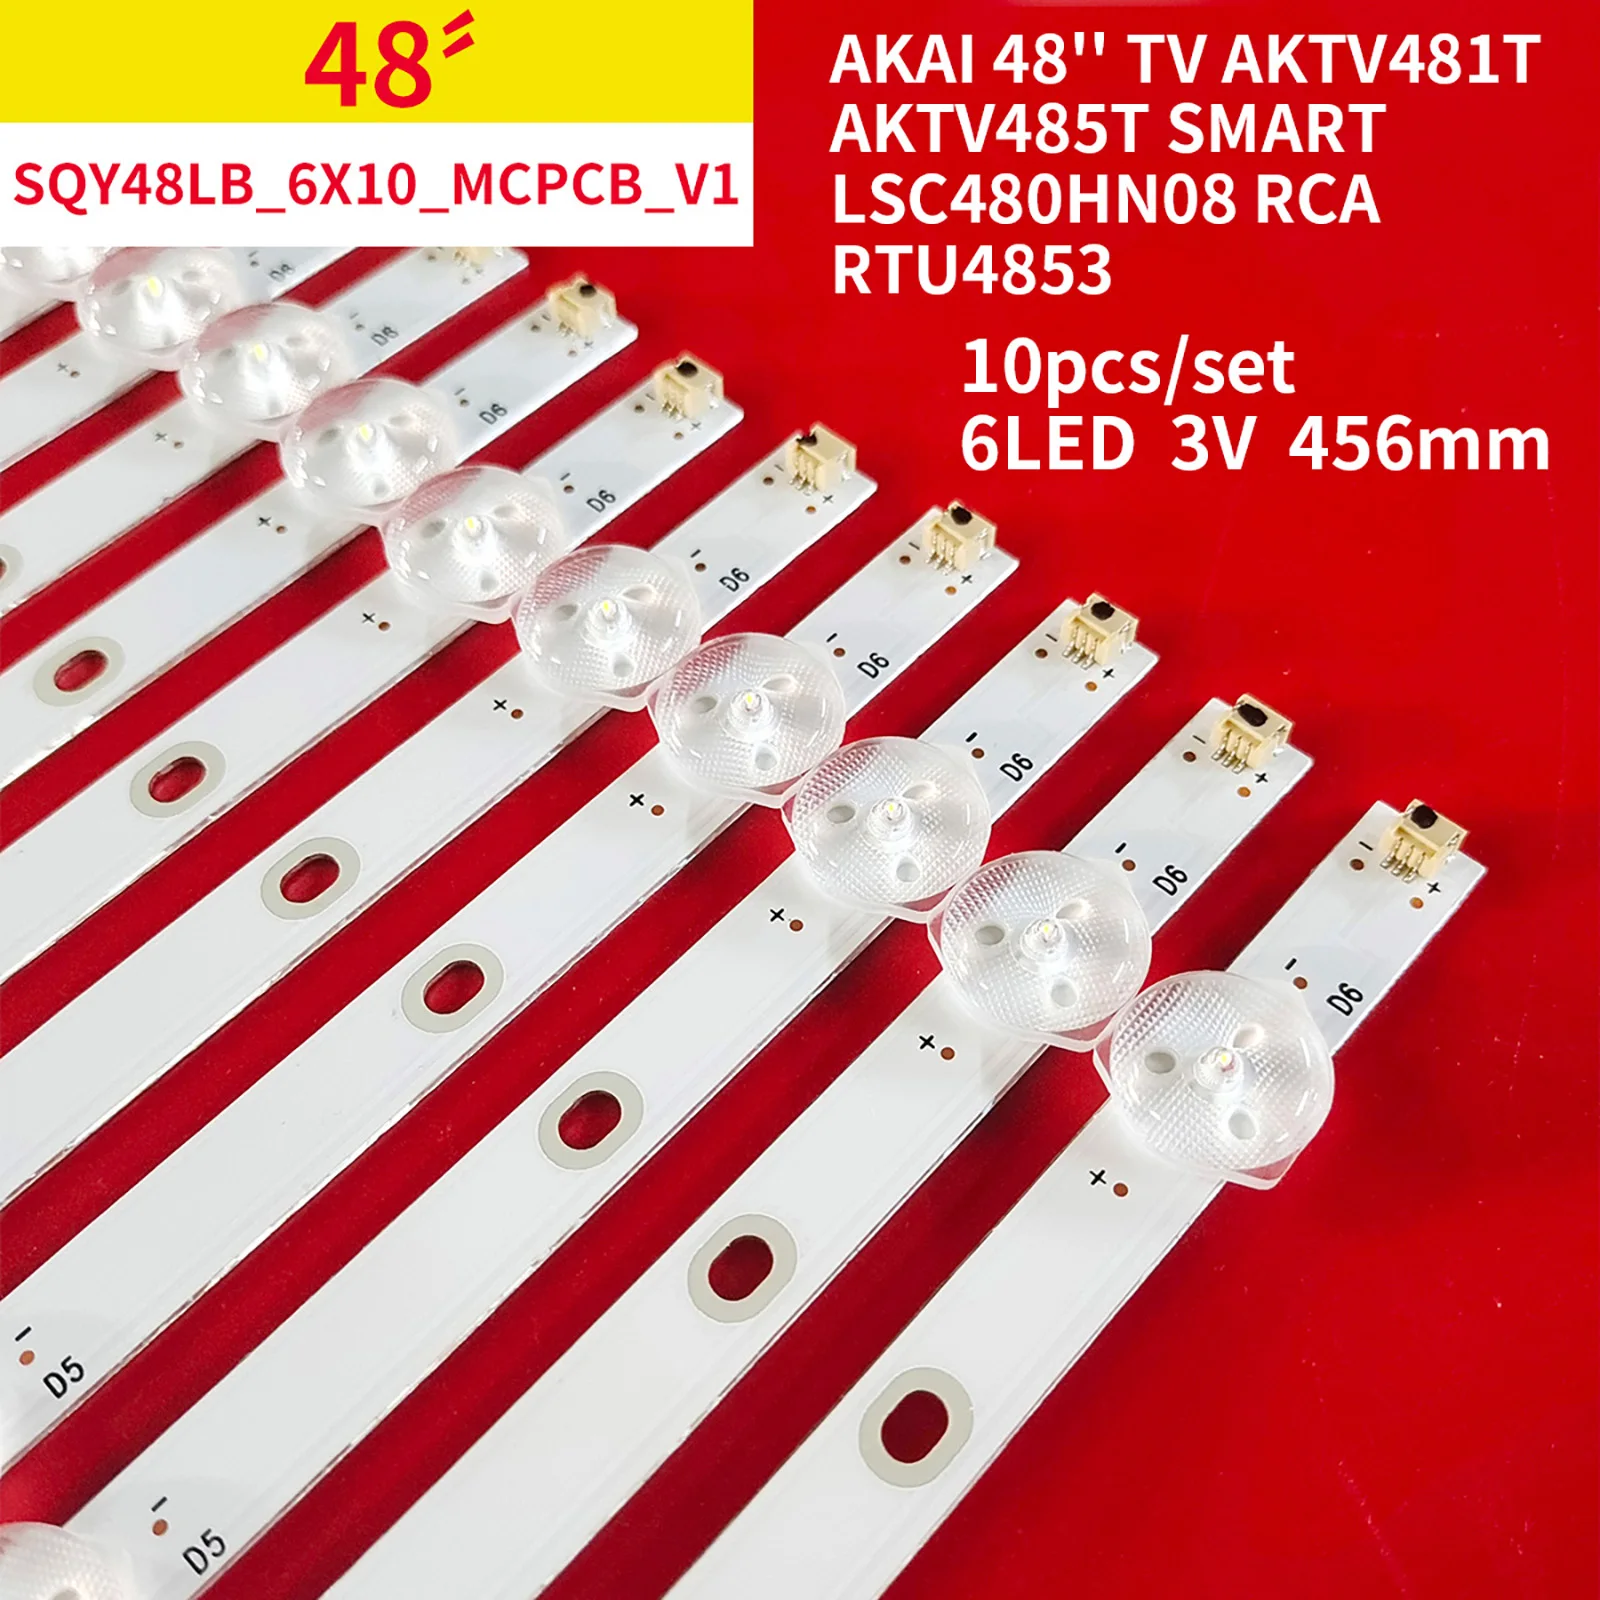 

LED Backlight Strip for AKAI 48'' TV AKTV481T AKTV485T Smart LSC480HN08 RCA RTU4853 SQY48LB 6X10 MCPCB V1